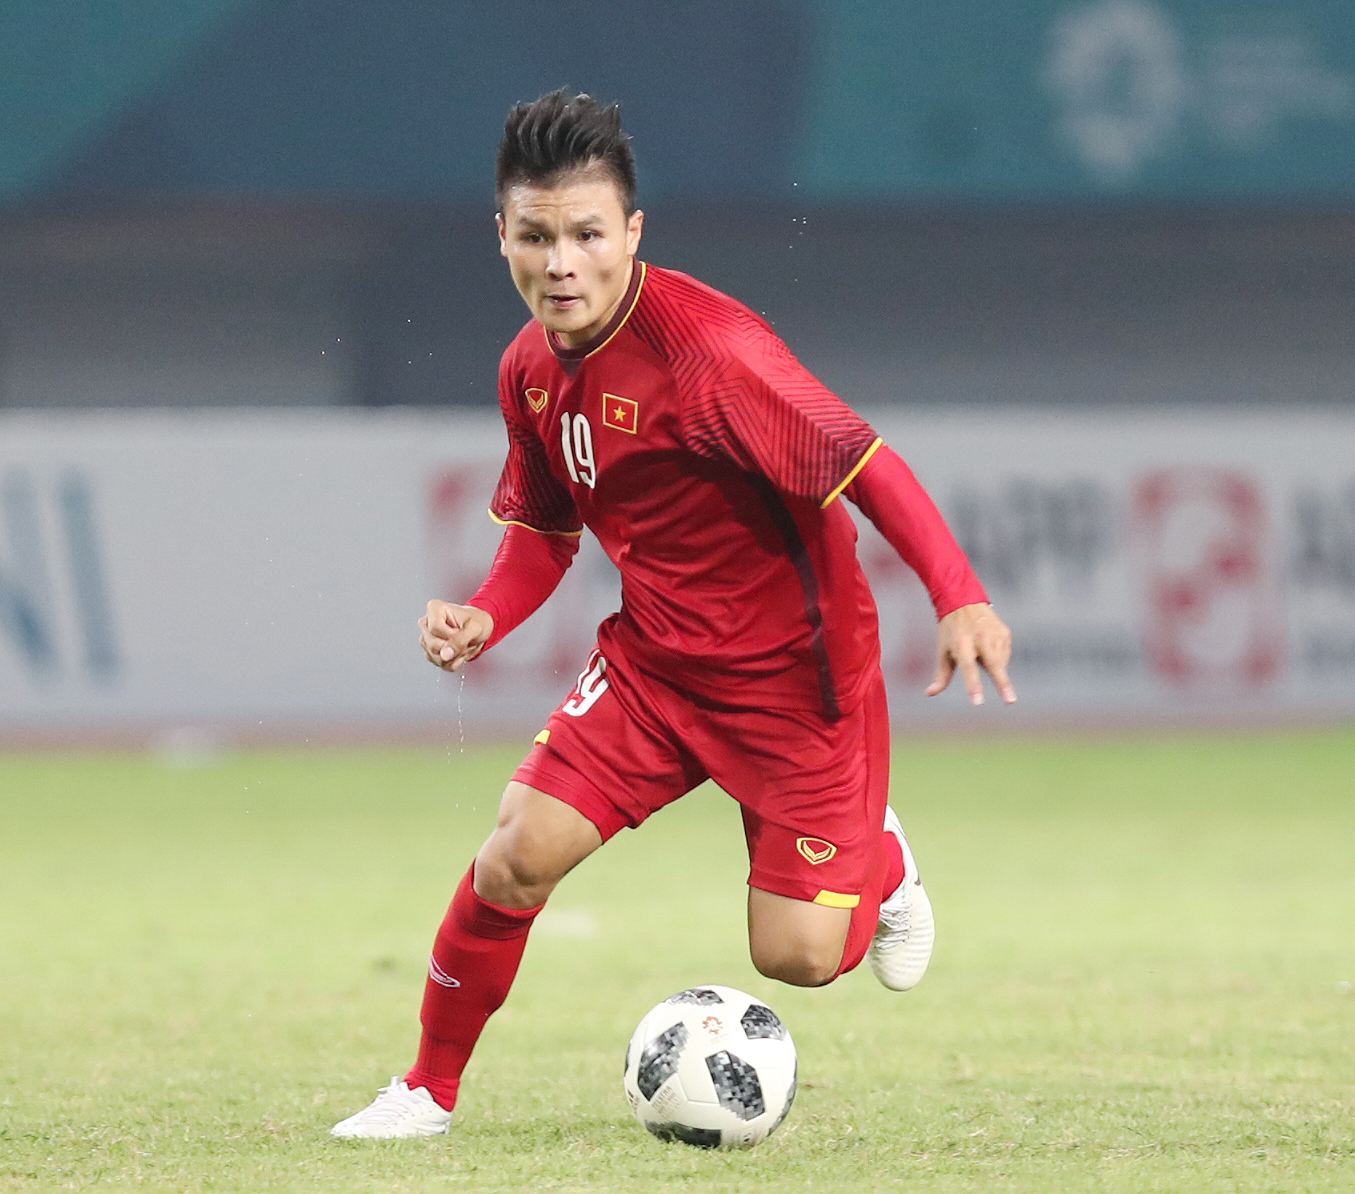 Tổng hợp hình ảnh cầu thủ Nguyễn Quang Hải đẹp nhất - [Kích thước hình ảnh: 1355x1194 px]